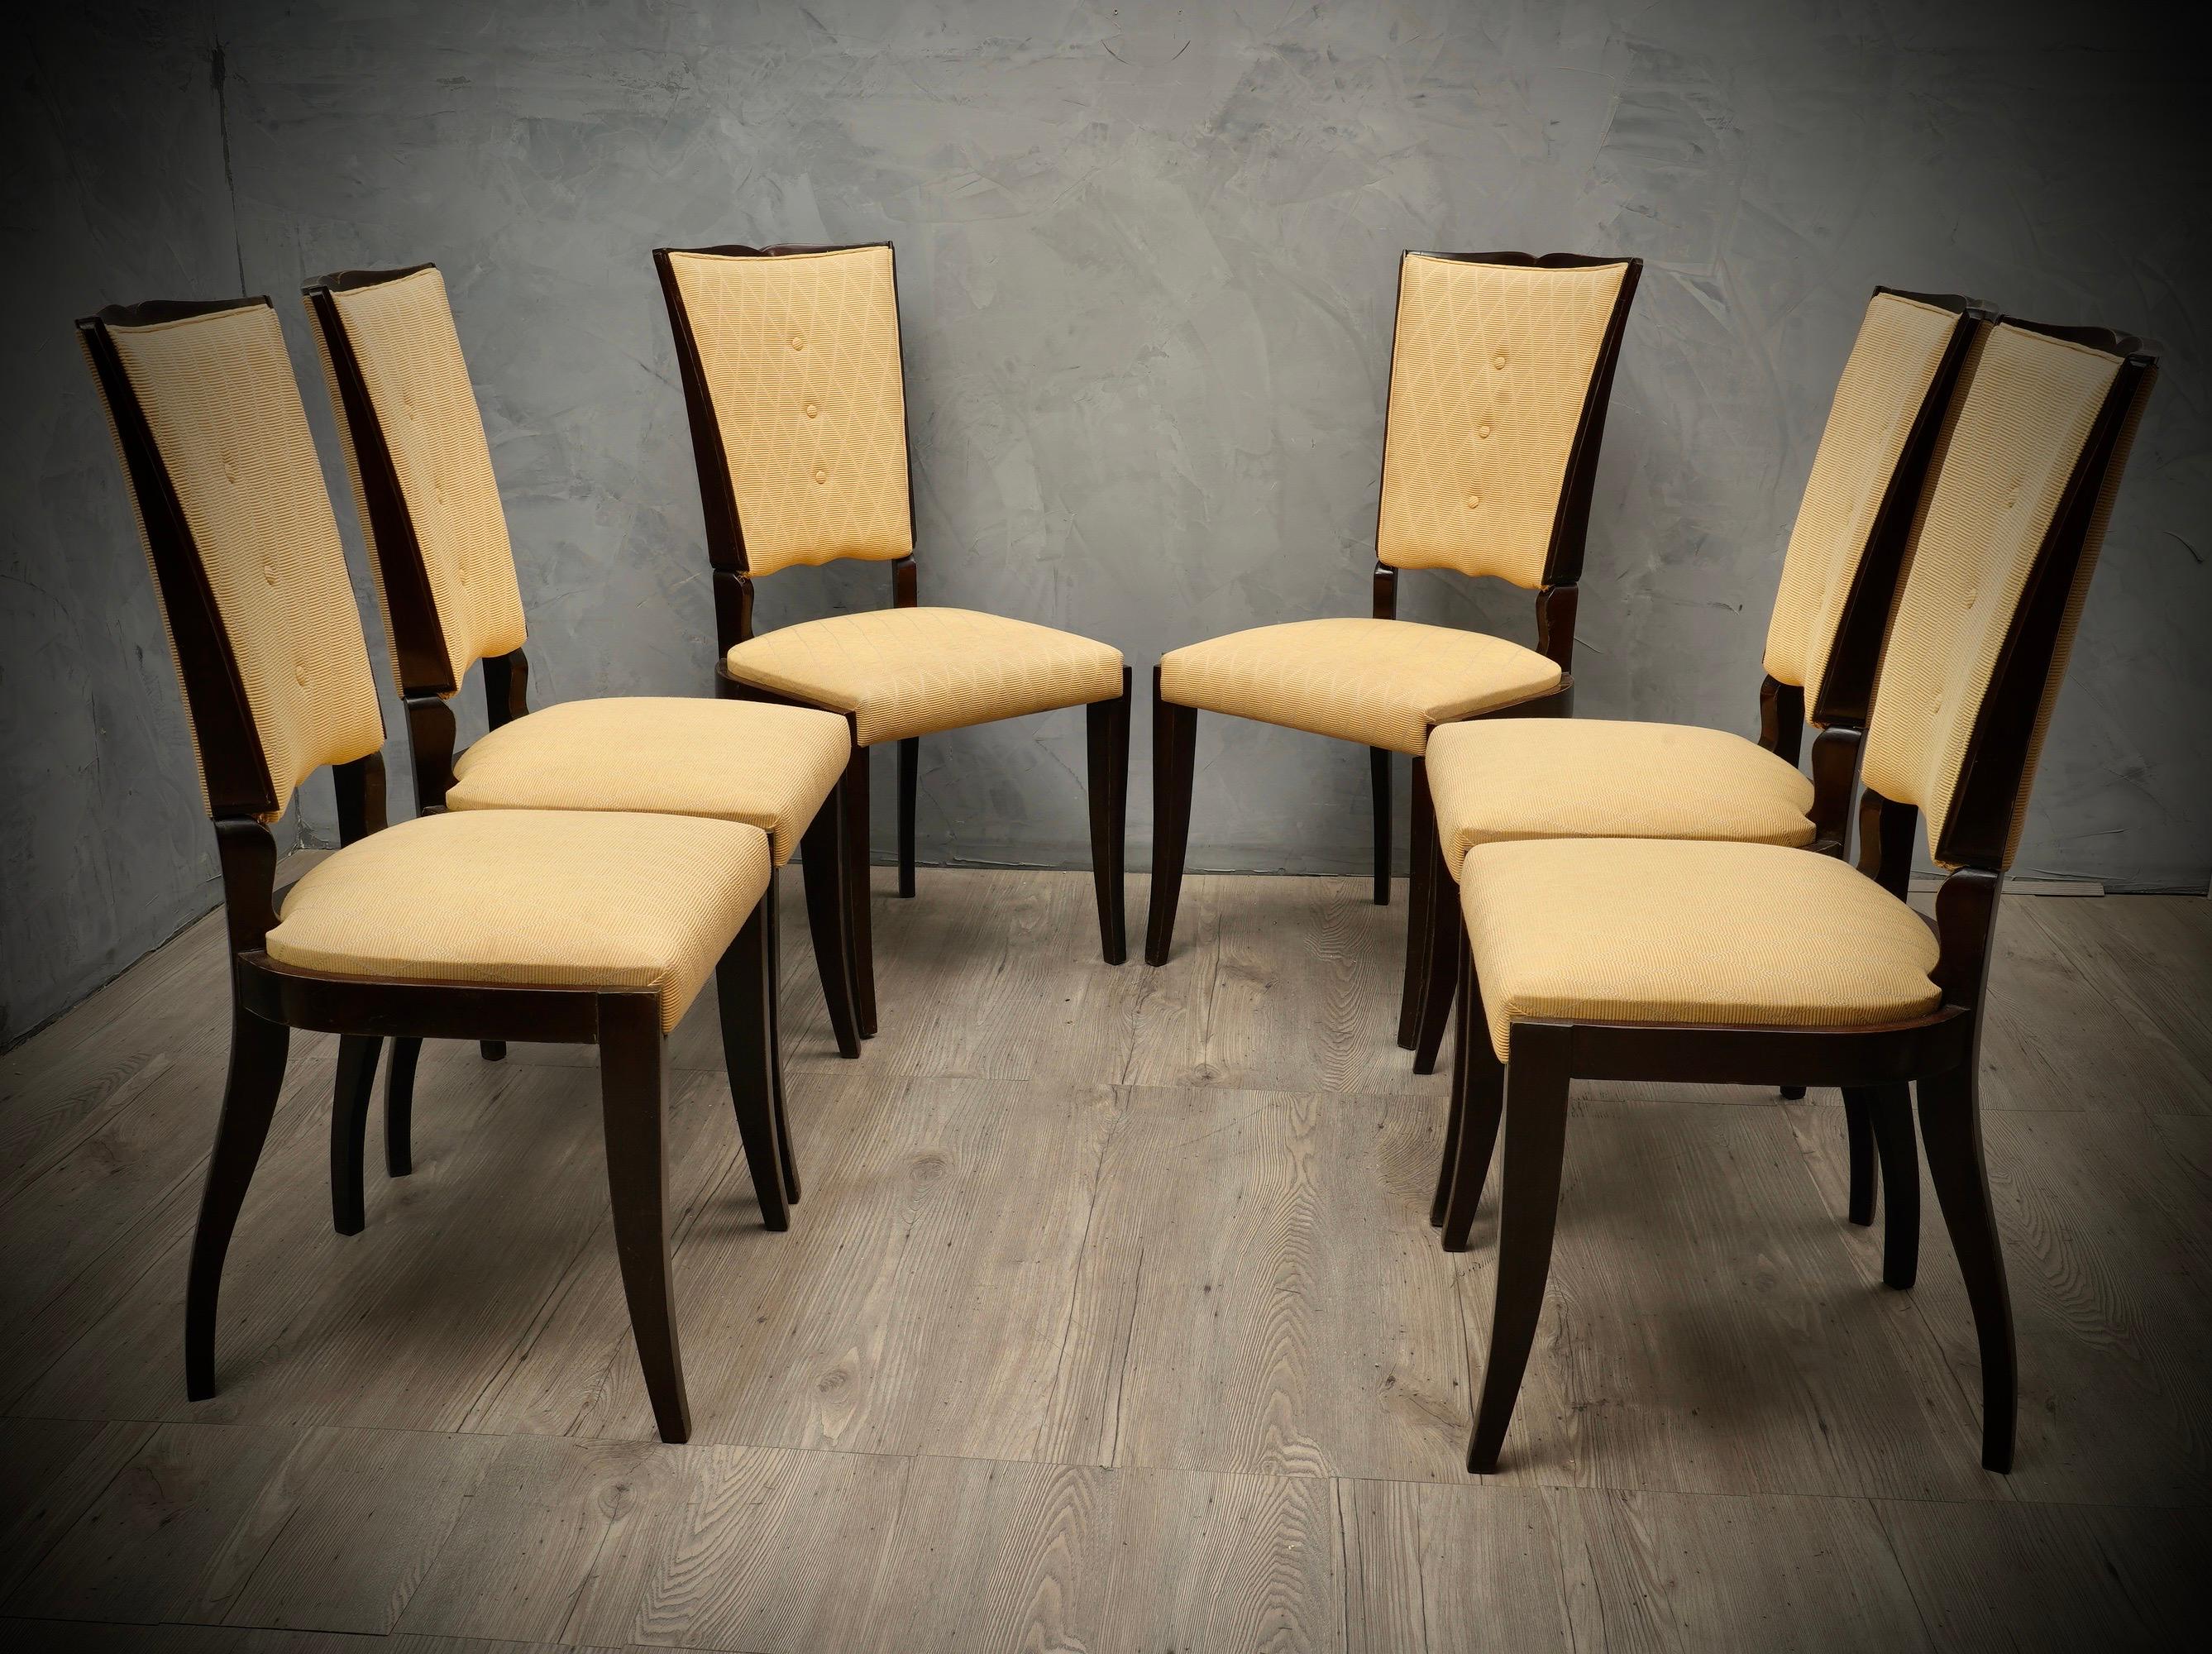 Satz von sechs Stühlen im schönen Design der 1940er Jahre im charakteristischen italienischen Stil von Paolo Buffa, Vittorio Dassi und Osvaldo Borsani, mit Säbelbeinen und geformter Rückenlehne. Originalität und Stil für diese Stühle, die für eine